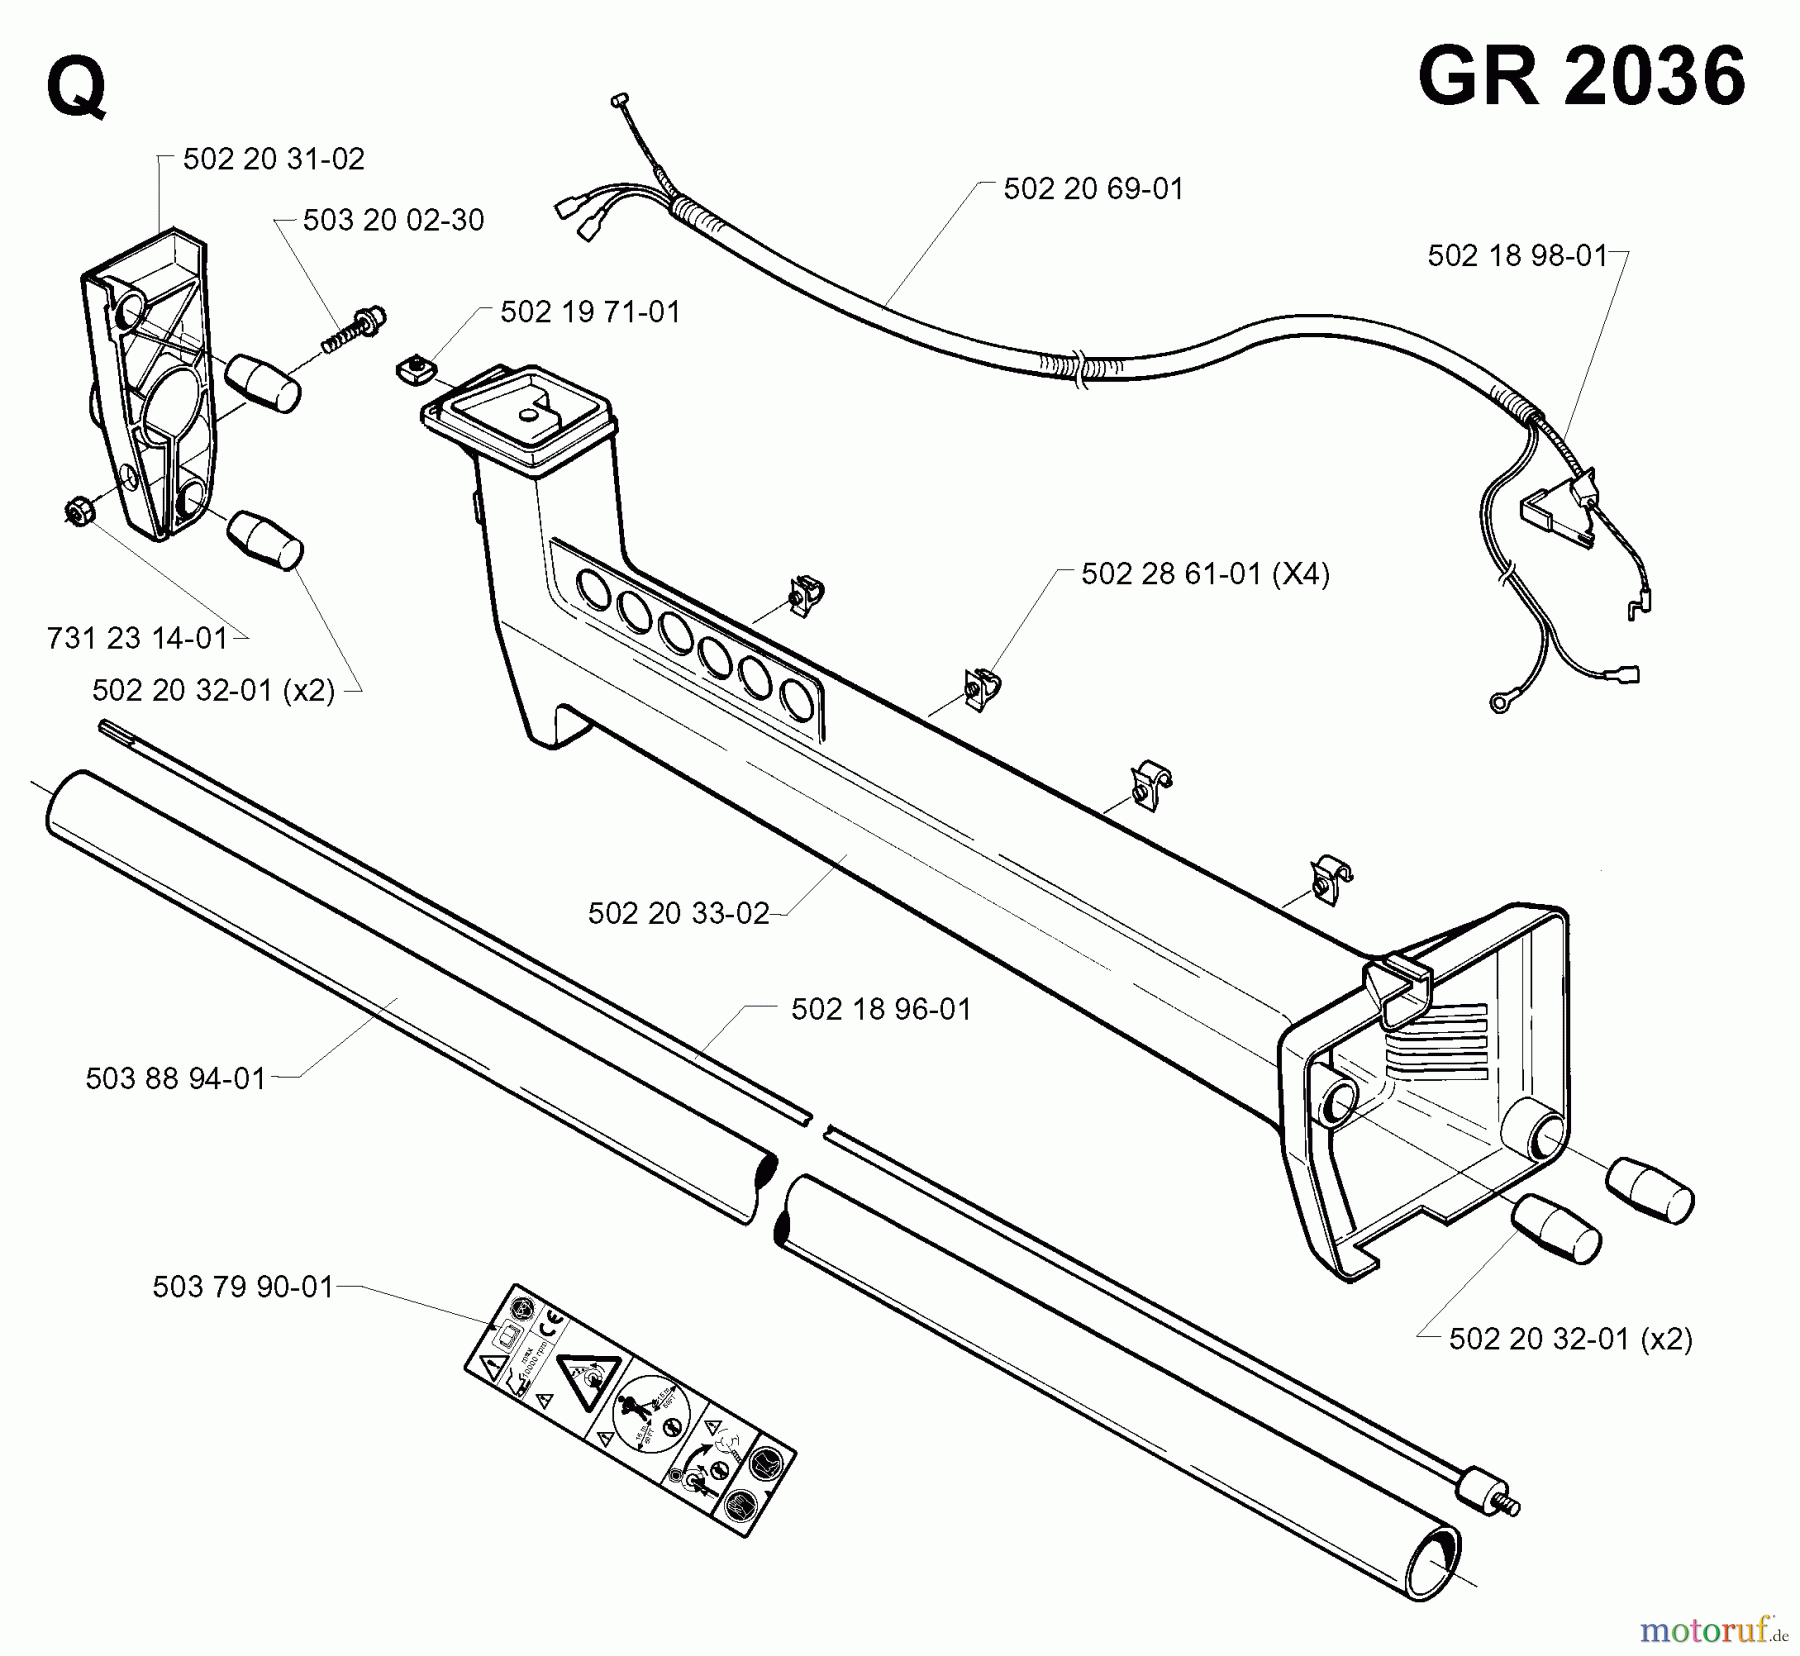  Jonsered Motorsensen, Trimmer GR2036 - Jonsered String/Brush Trimmer (1998-02) SHAFT